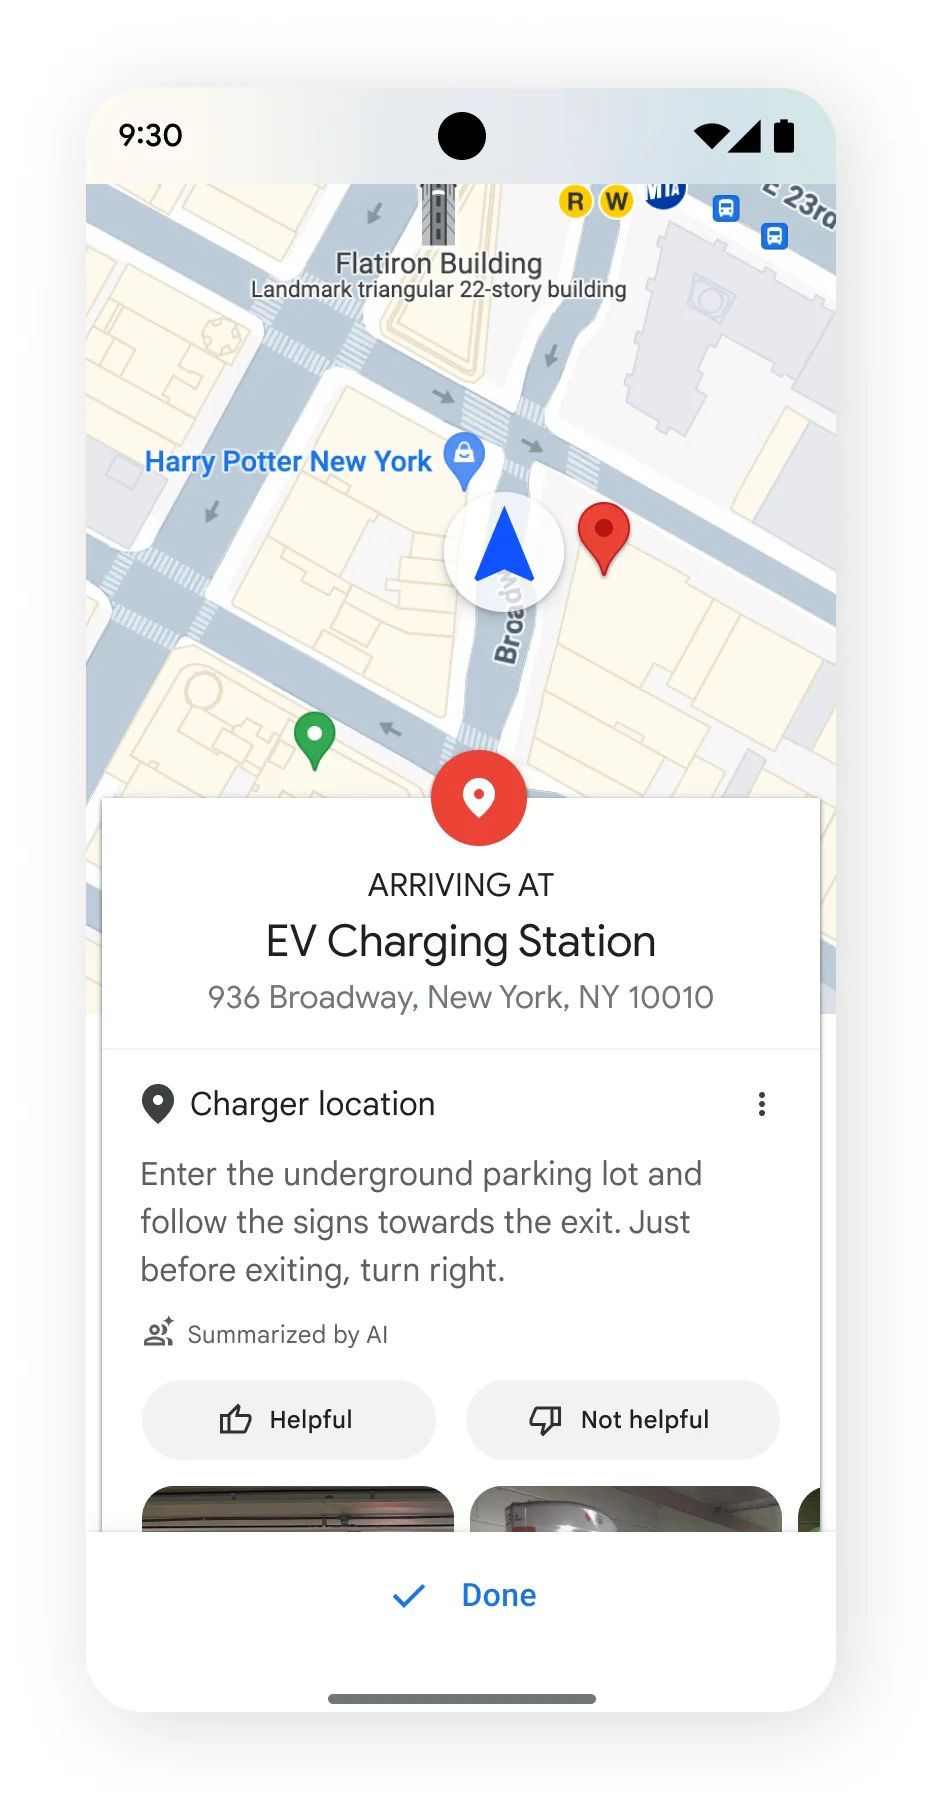 Google地图会利用AI分析用家评论，并指示车主如何找到停车场内充电位的准确位置。